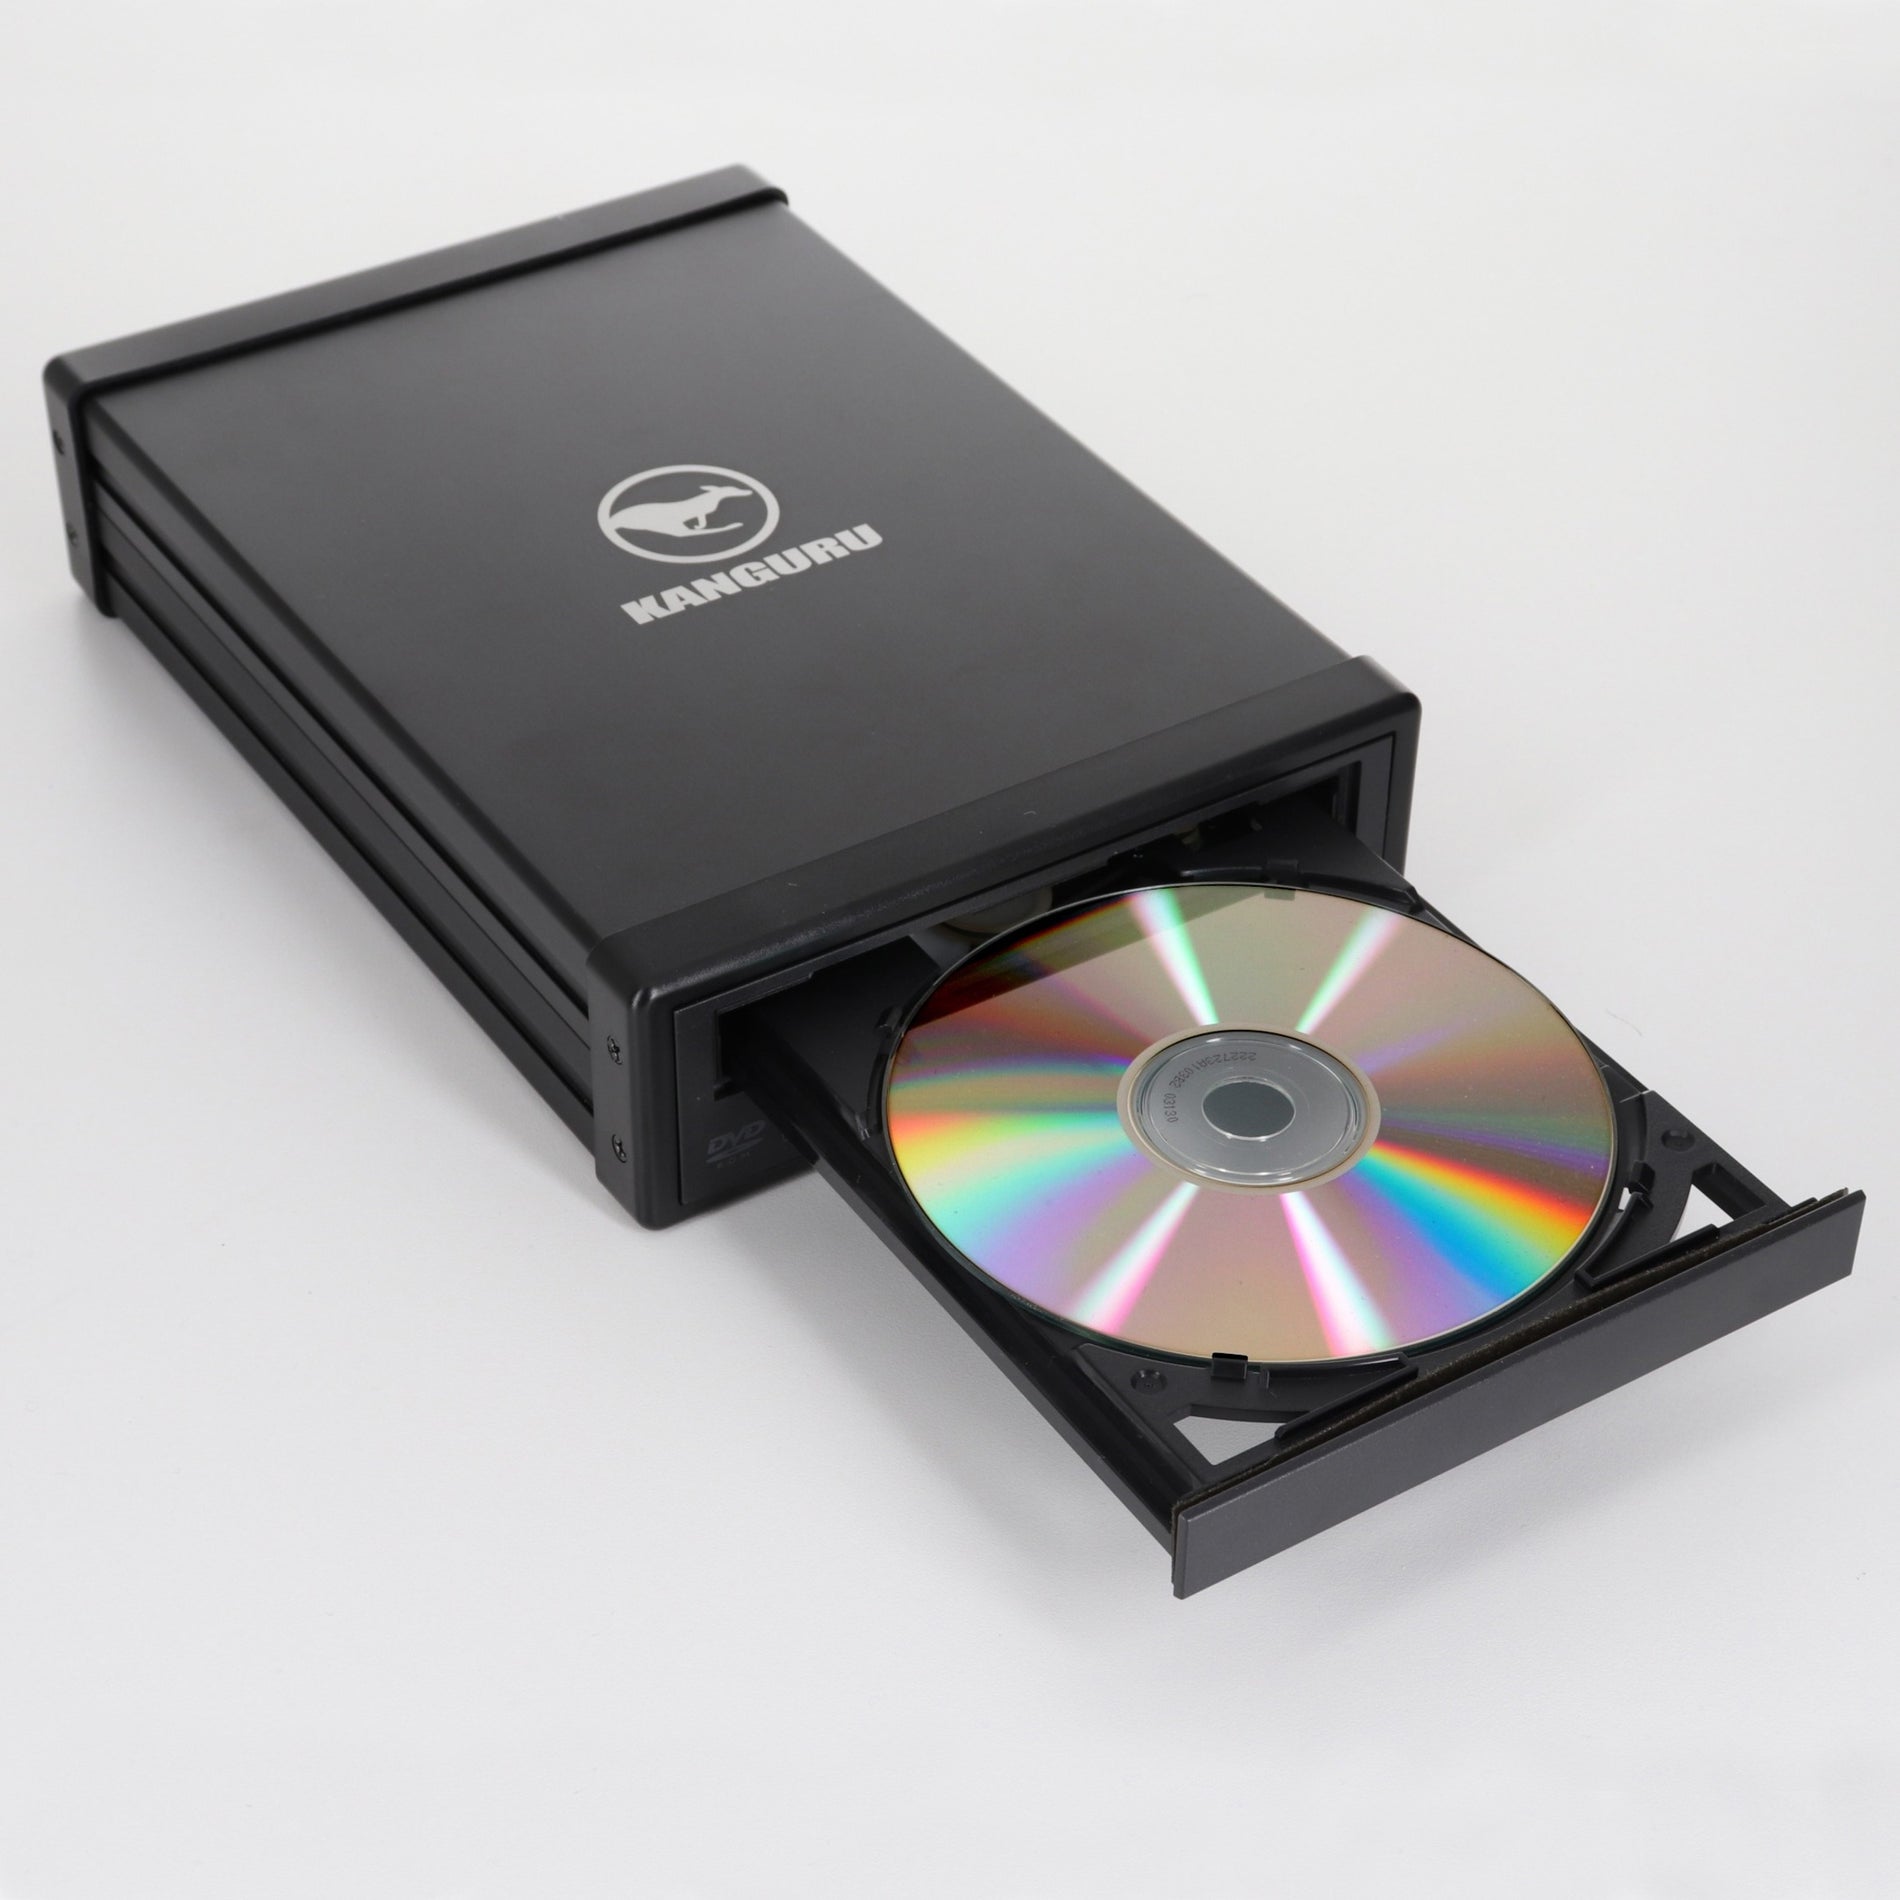 Kanguru U3-DVDRW-24X Full Size DVD+/-RW USB3.0 24x (Dual Format, Dual Layer), TAA Compliant DVD-Writer - External, Black